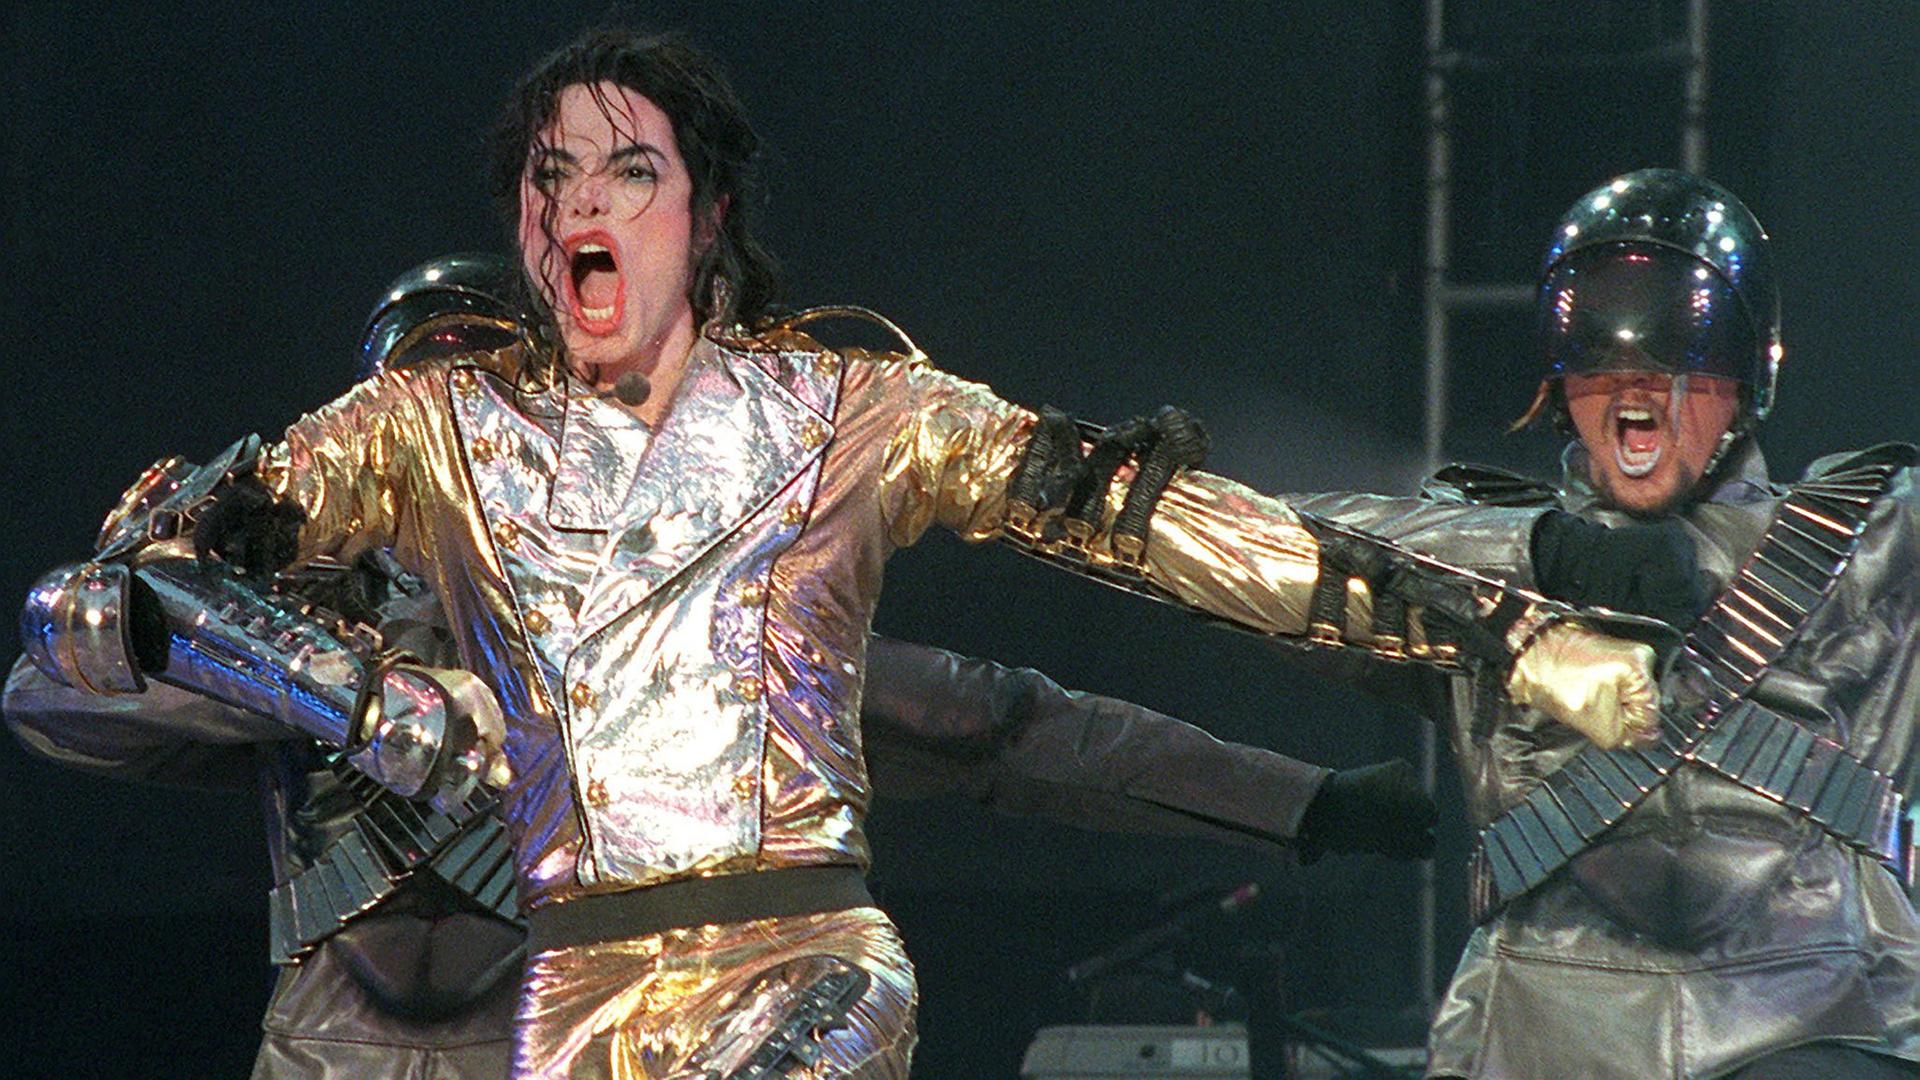 Michael Jackson - Figure 1